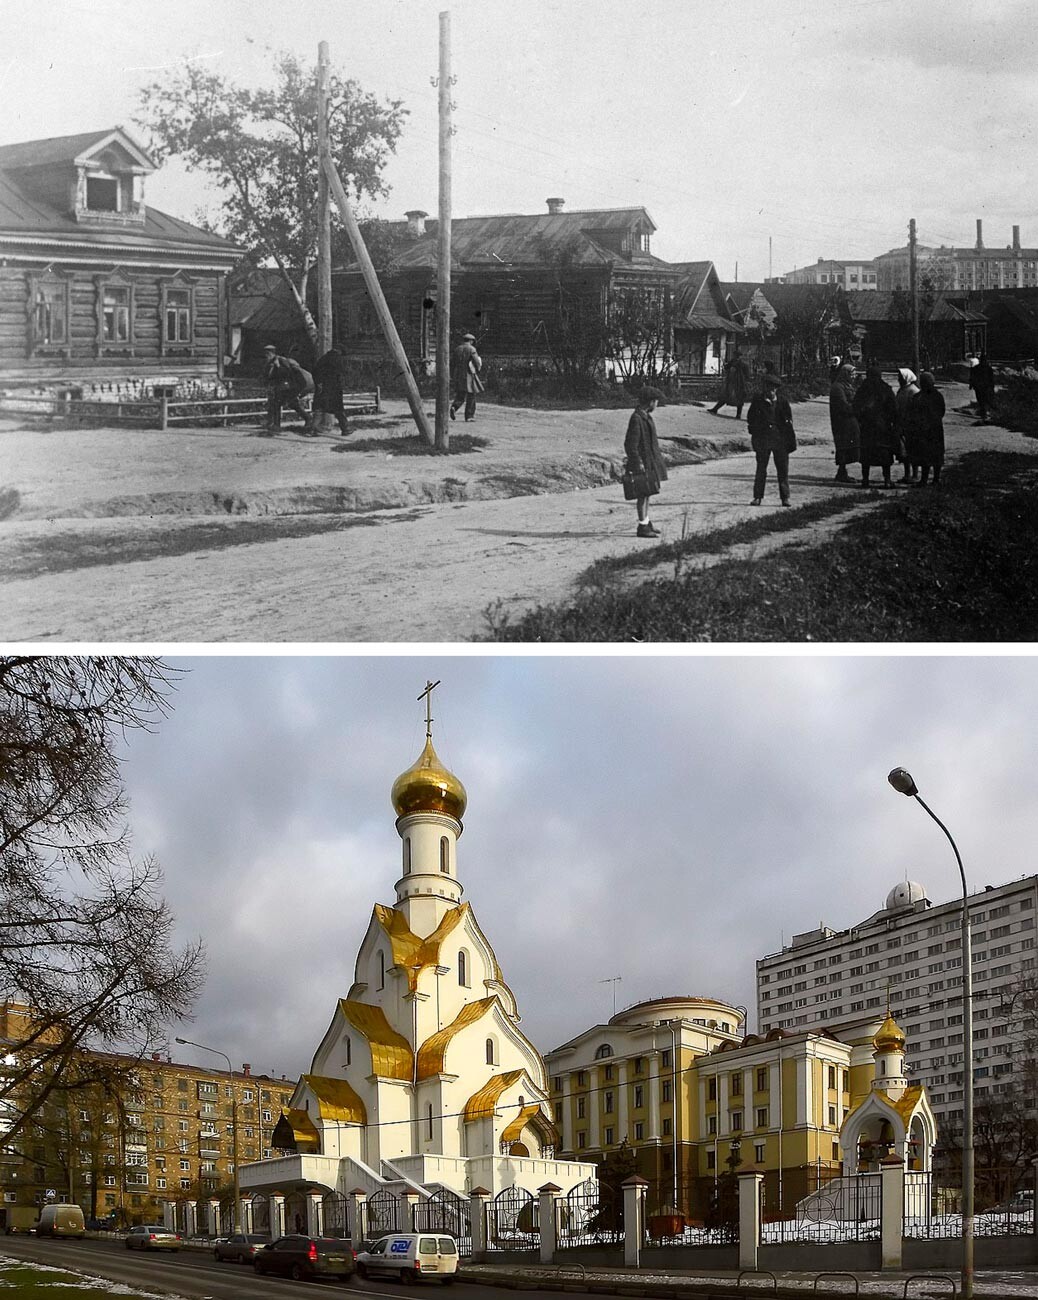 Above: The village of Kozhukhovo in 1951. Below: Alexander Nevsky church in Kozhukhovo.